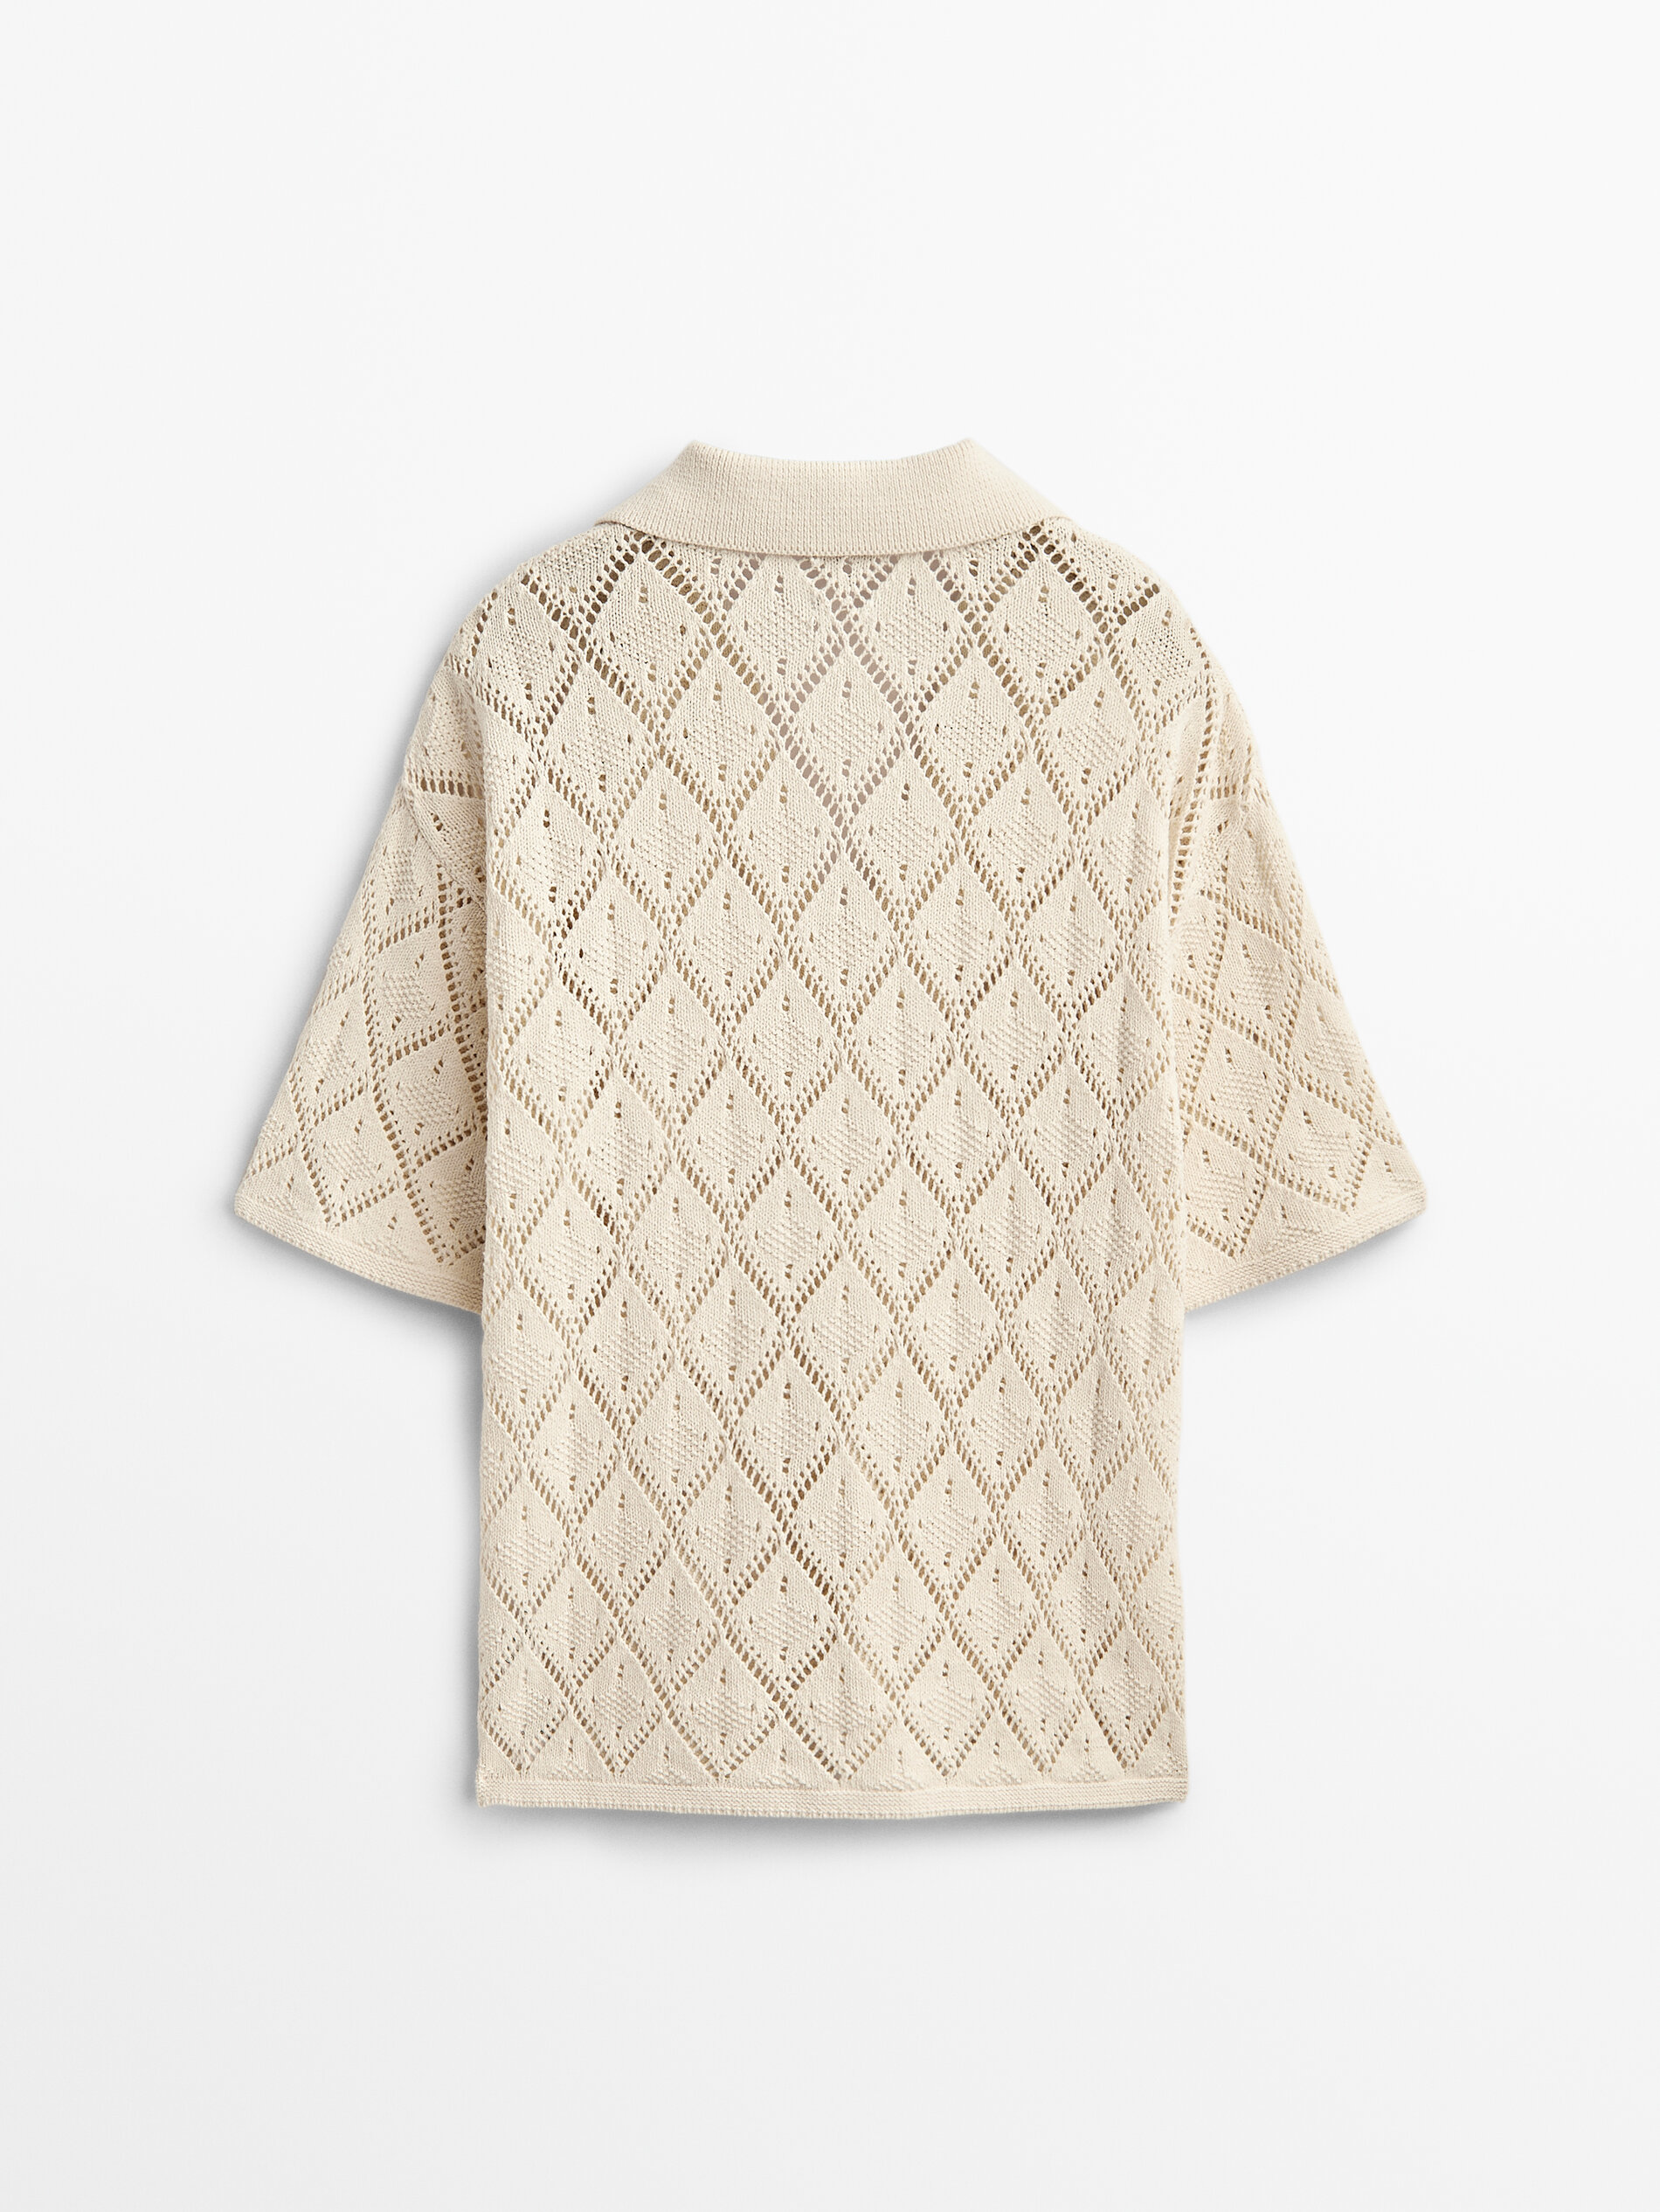 V-neck crochet knit sweater